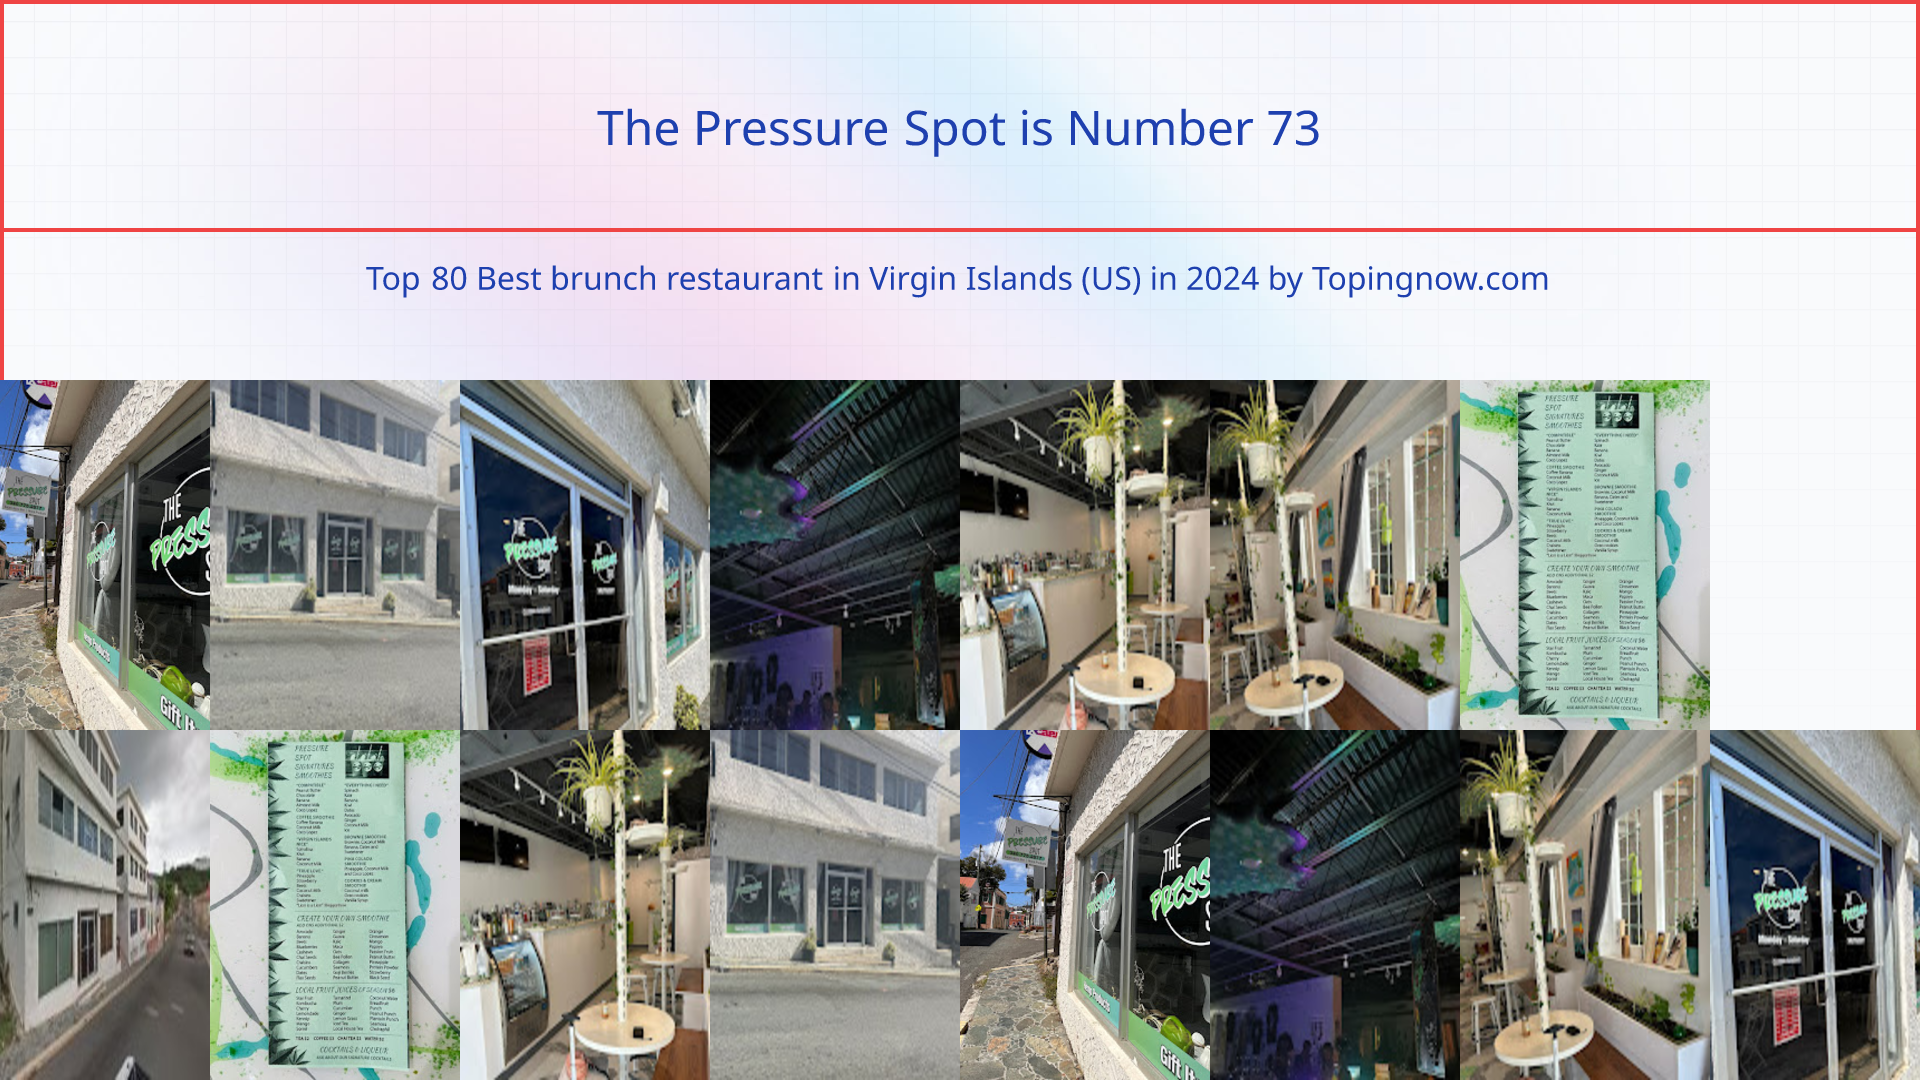 The Pressure Spot: Top 80 Best brunch restaurant in Virgin Islands (US) in 2024